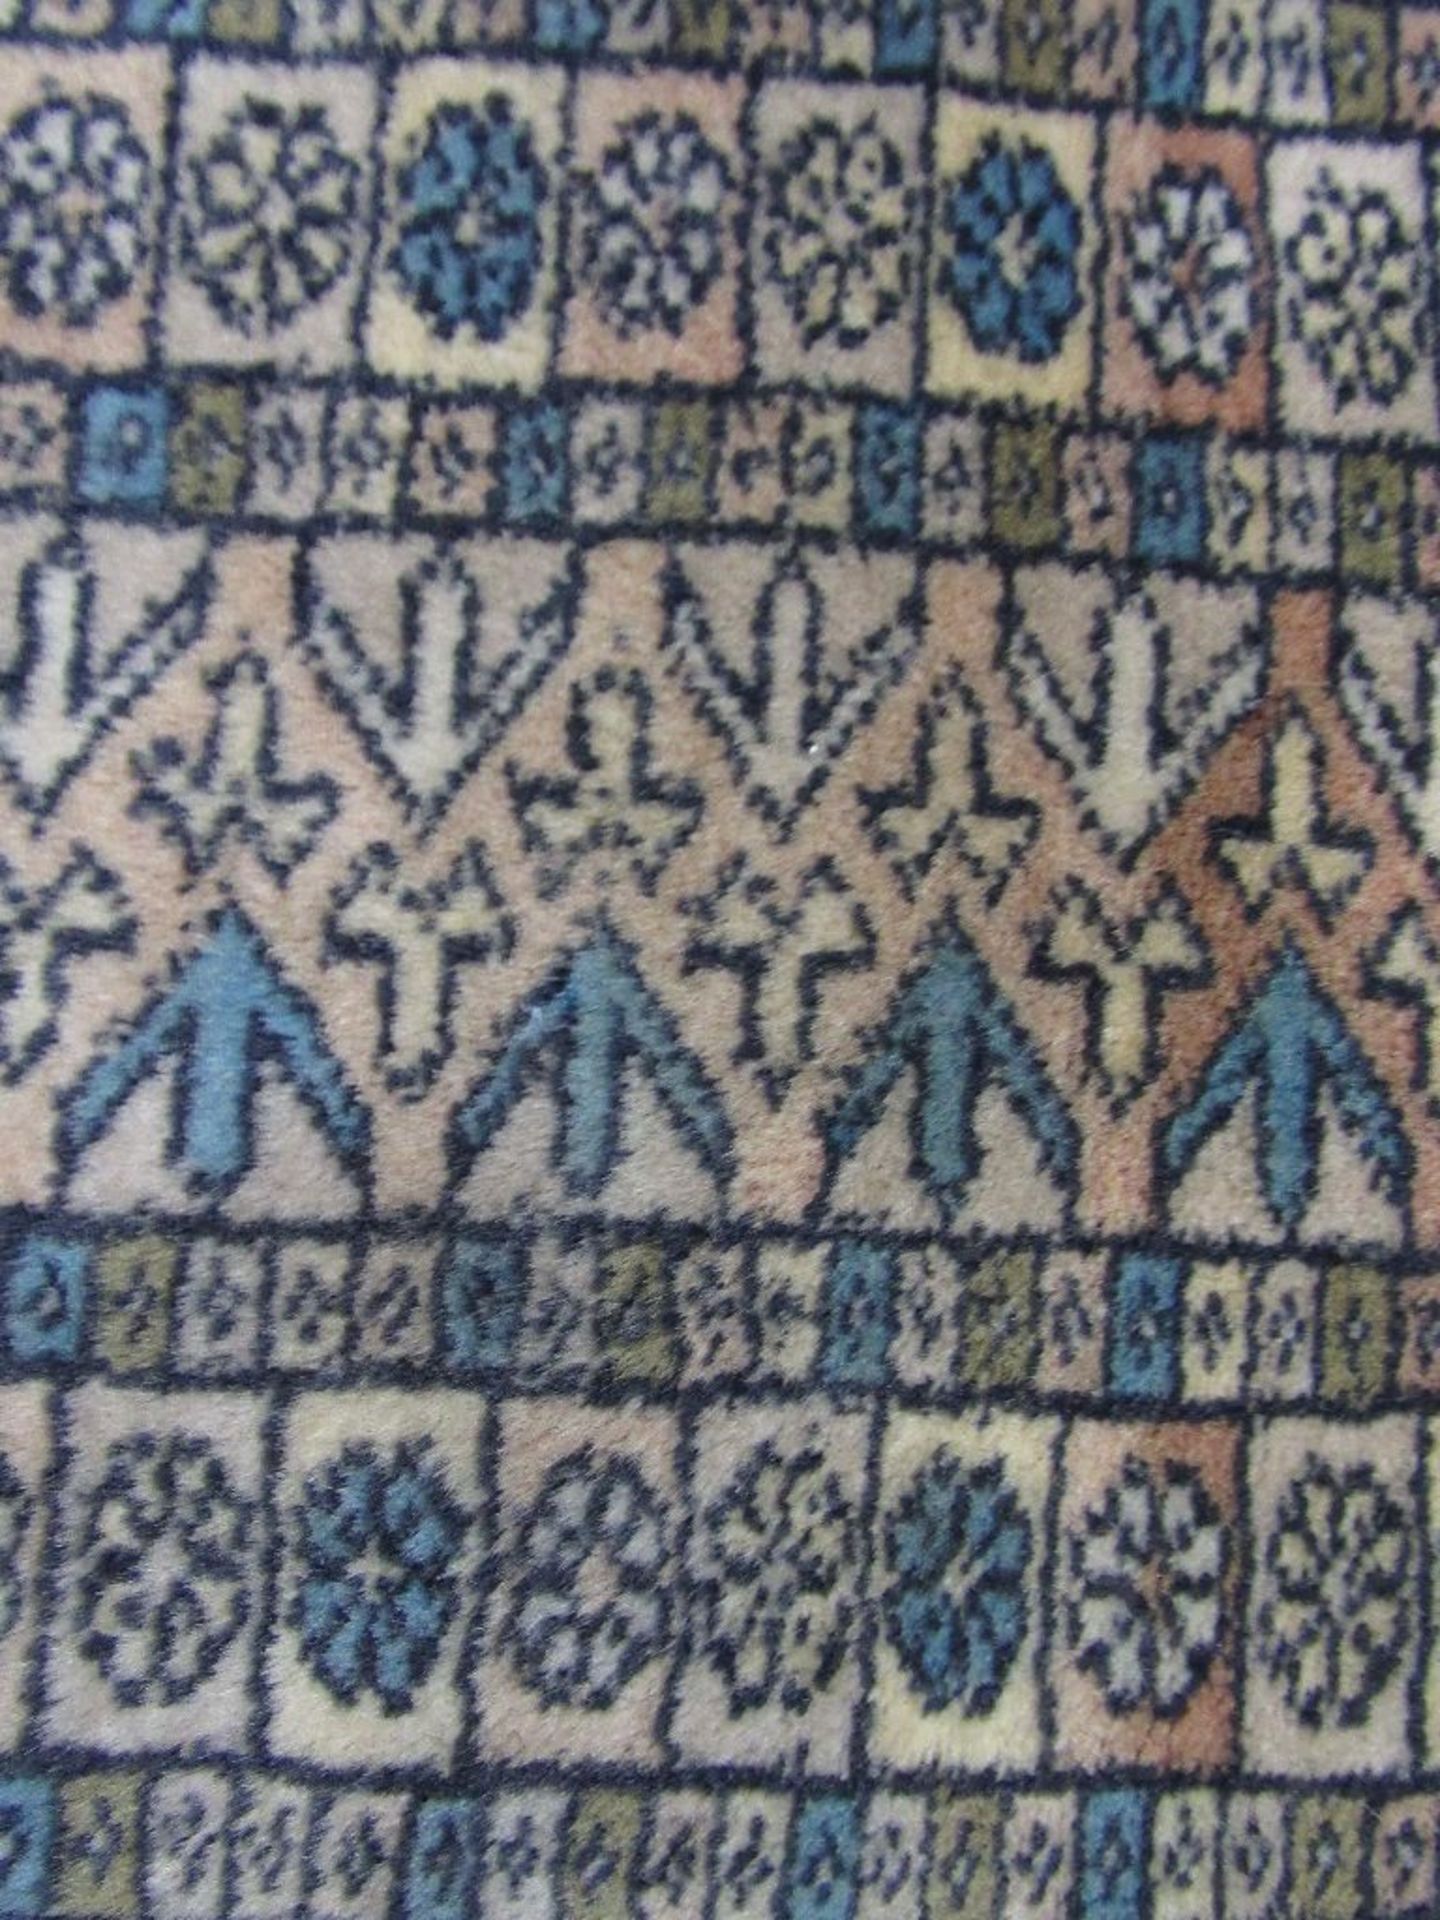 Antiker handgeknüpfter Orientteppich blaugrundig fein geknüpft Seidenanteilig 150x95cm - Image 3 of 6